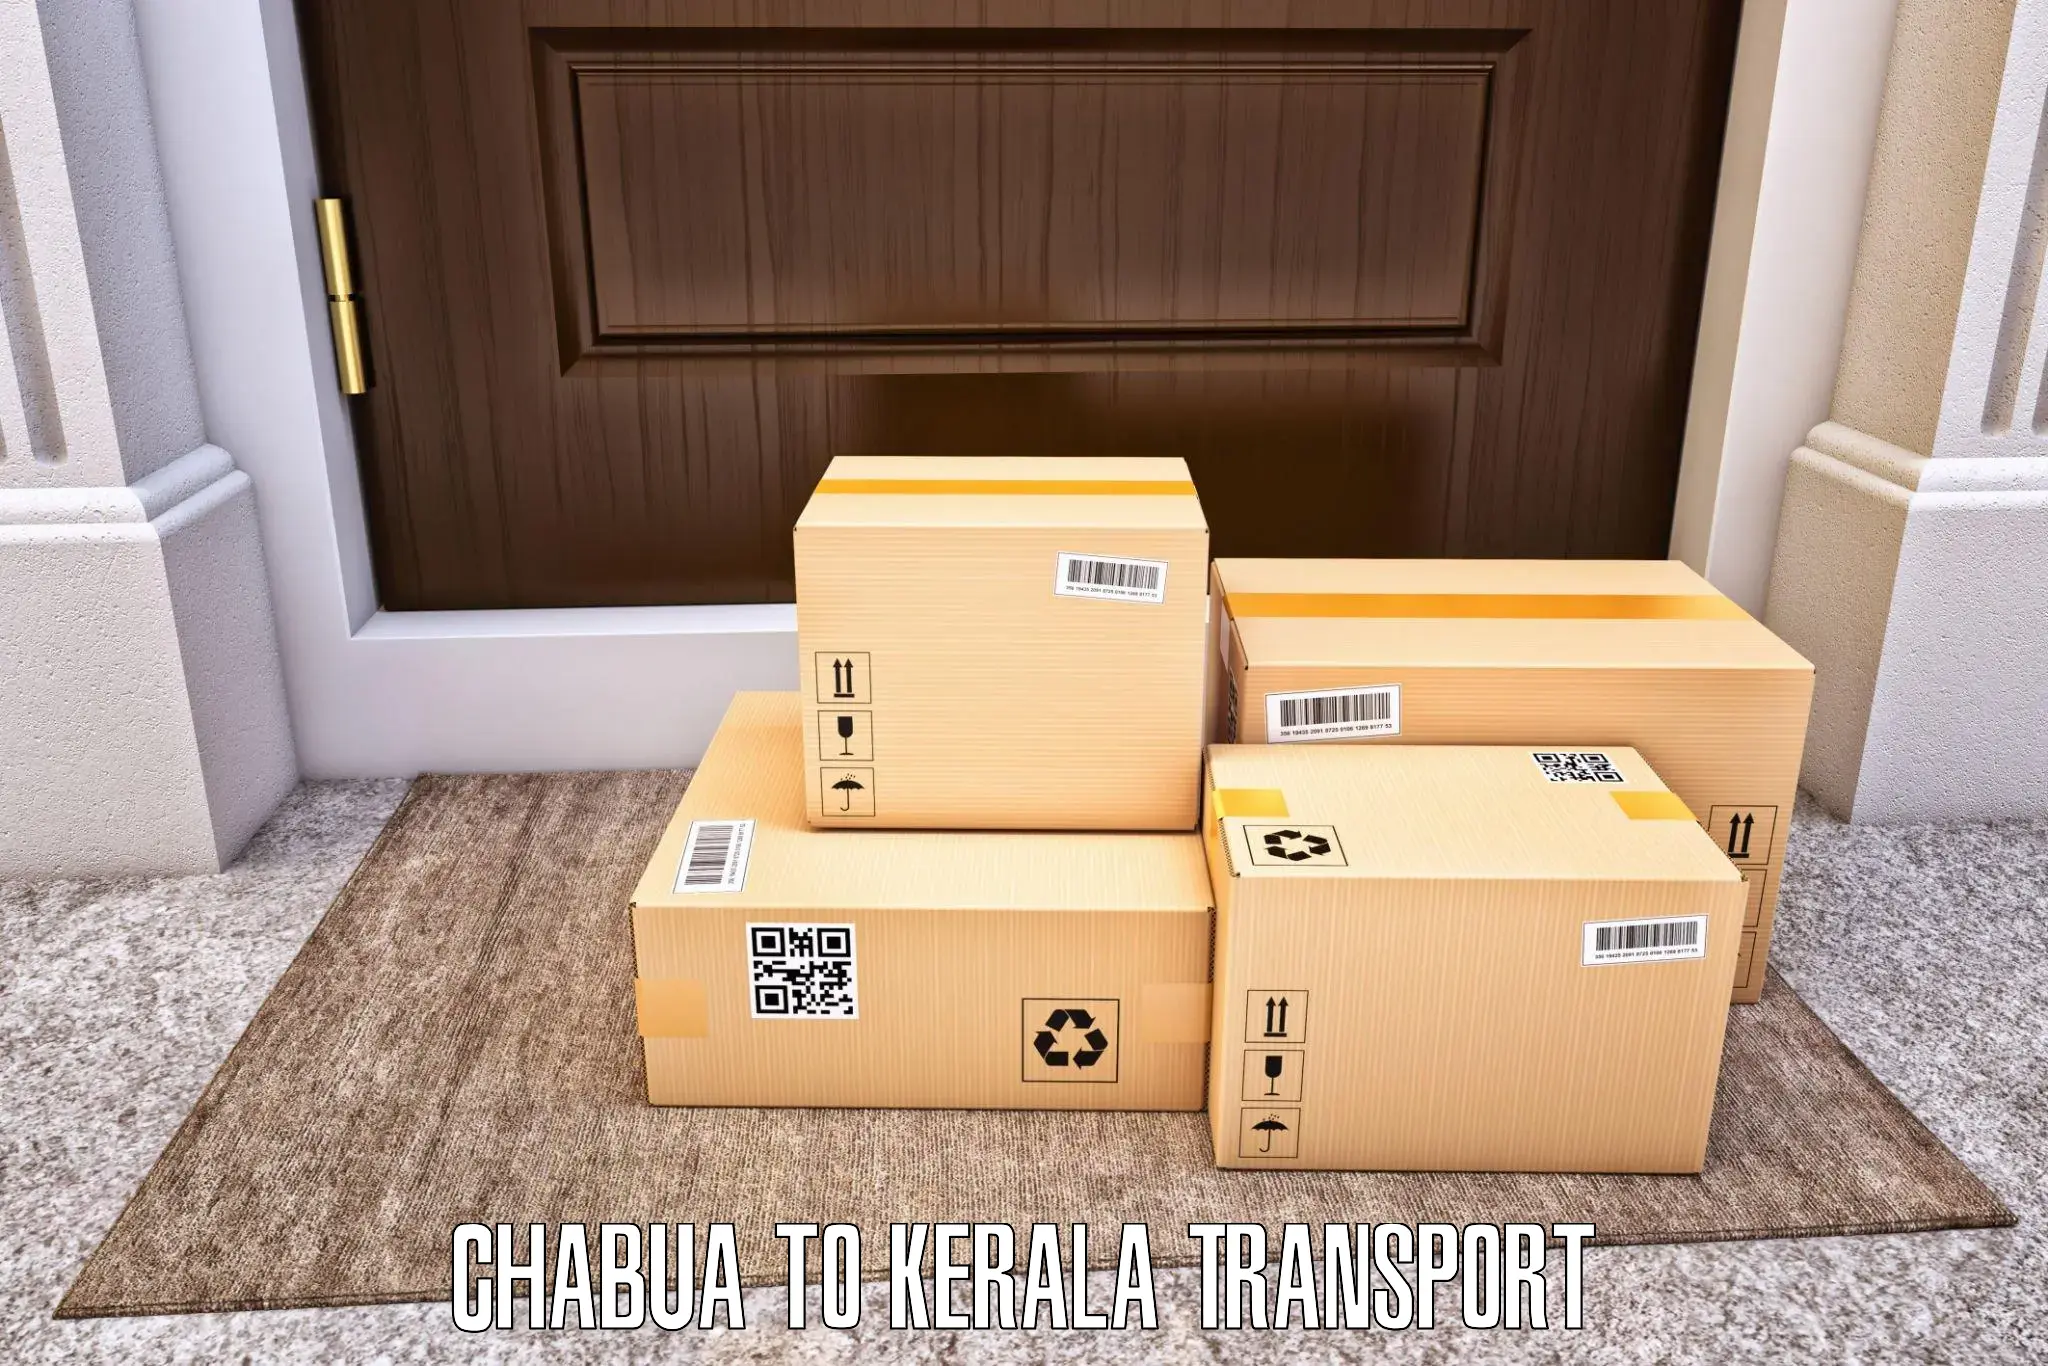 Cargo transportation services Chabua to Ponekkara